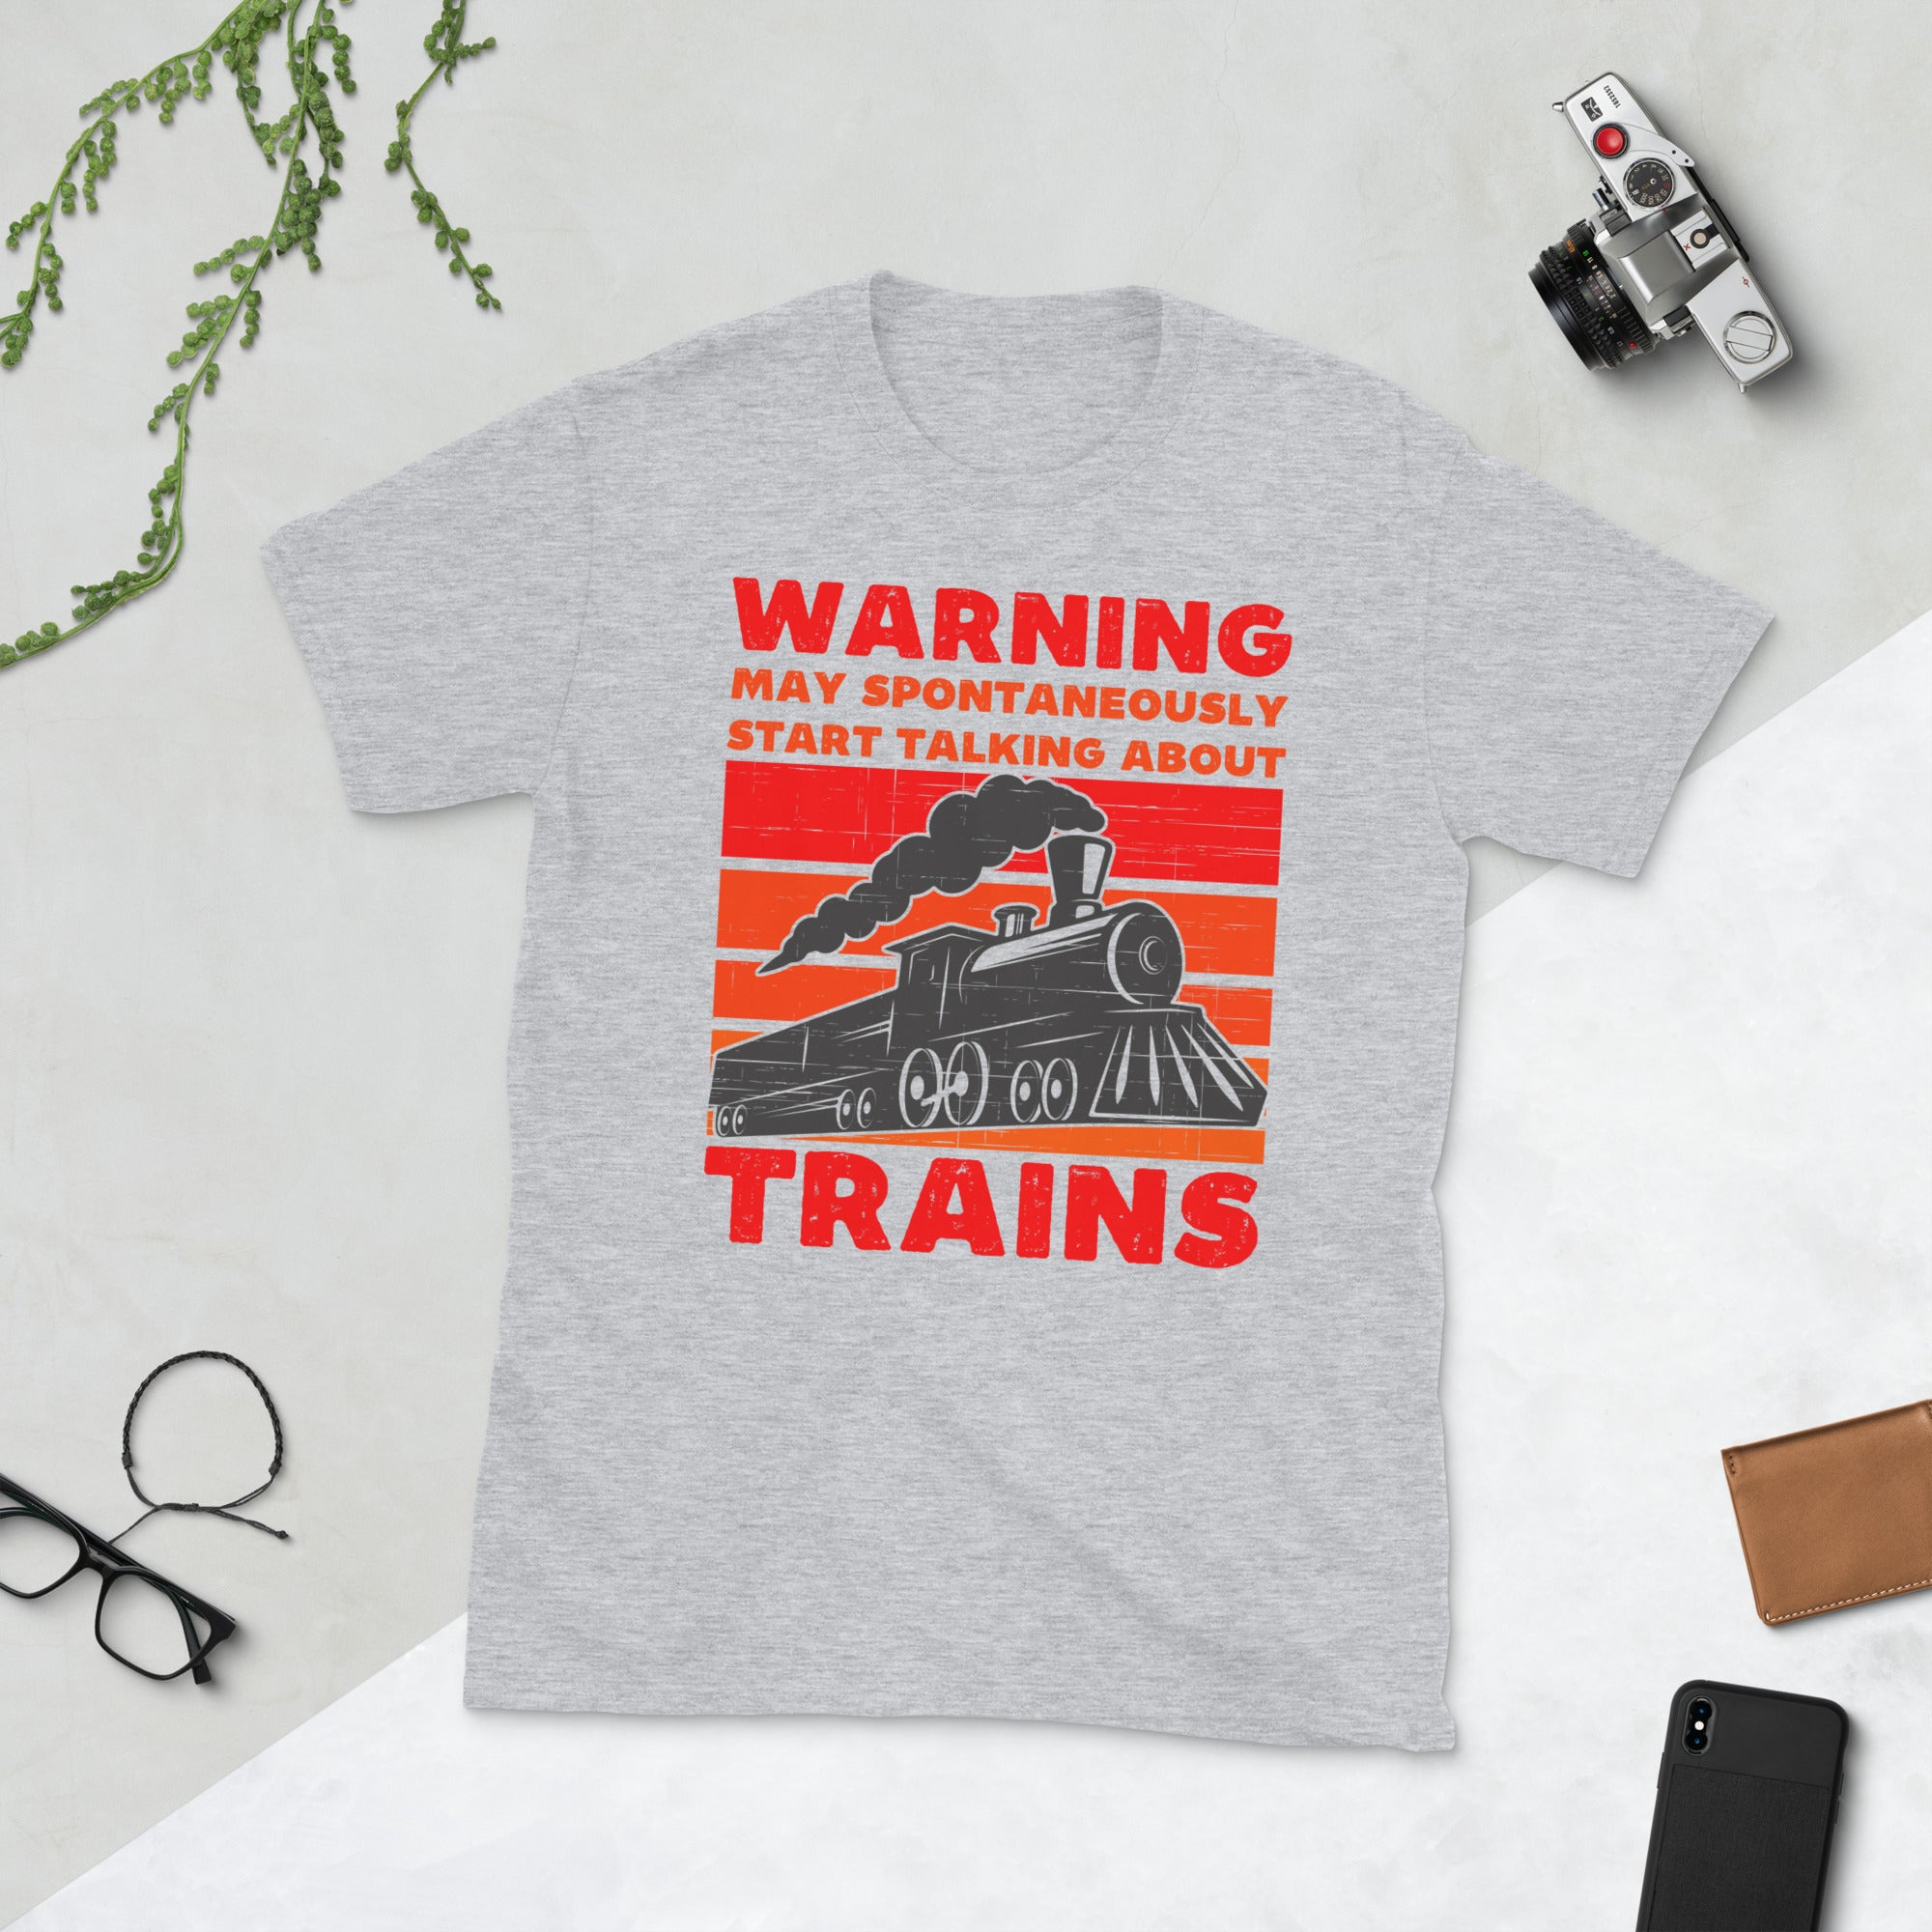 Achtung: Kann spontan anfangen, über Züge zu reden, Lokführer-Shirt, Lokführer-Geschenk, Eisenbahn-T-Shirt, Vintage-Zug-T-Shirt